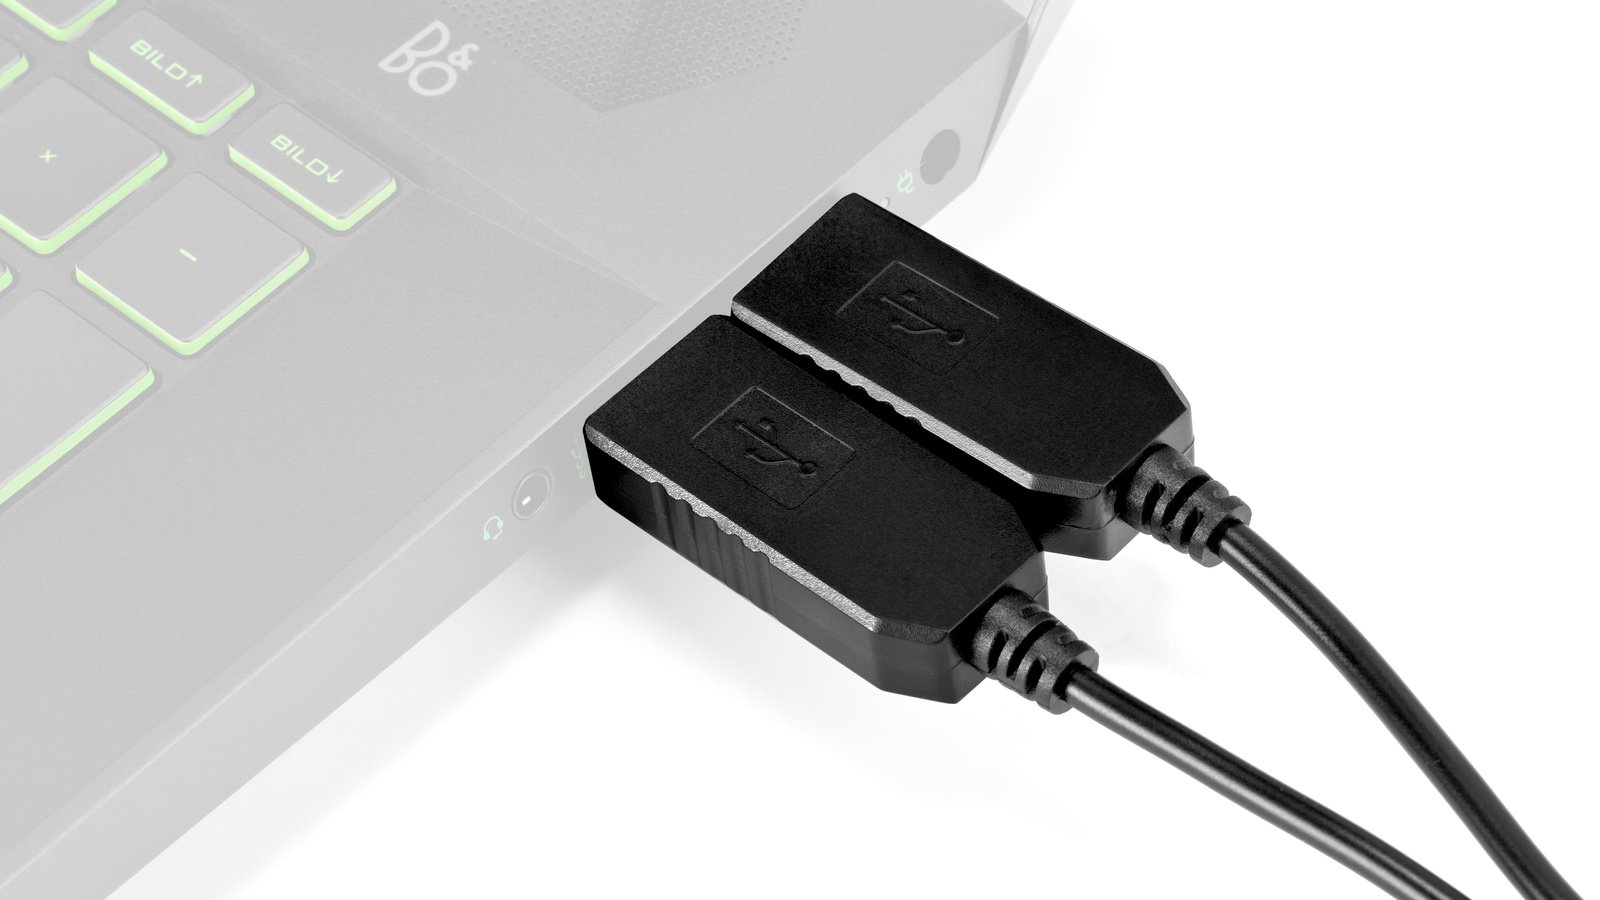 Das Kabel lässt sich am Notebook oder USB-Hub anschliessen